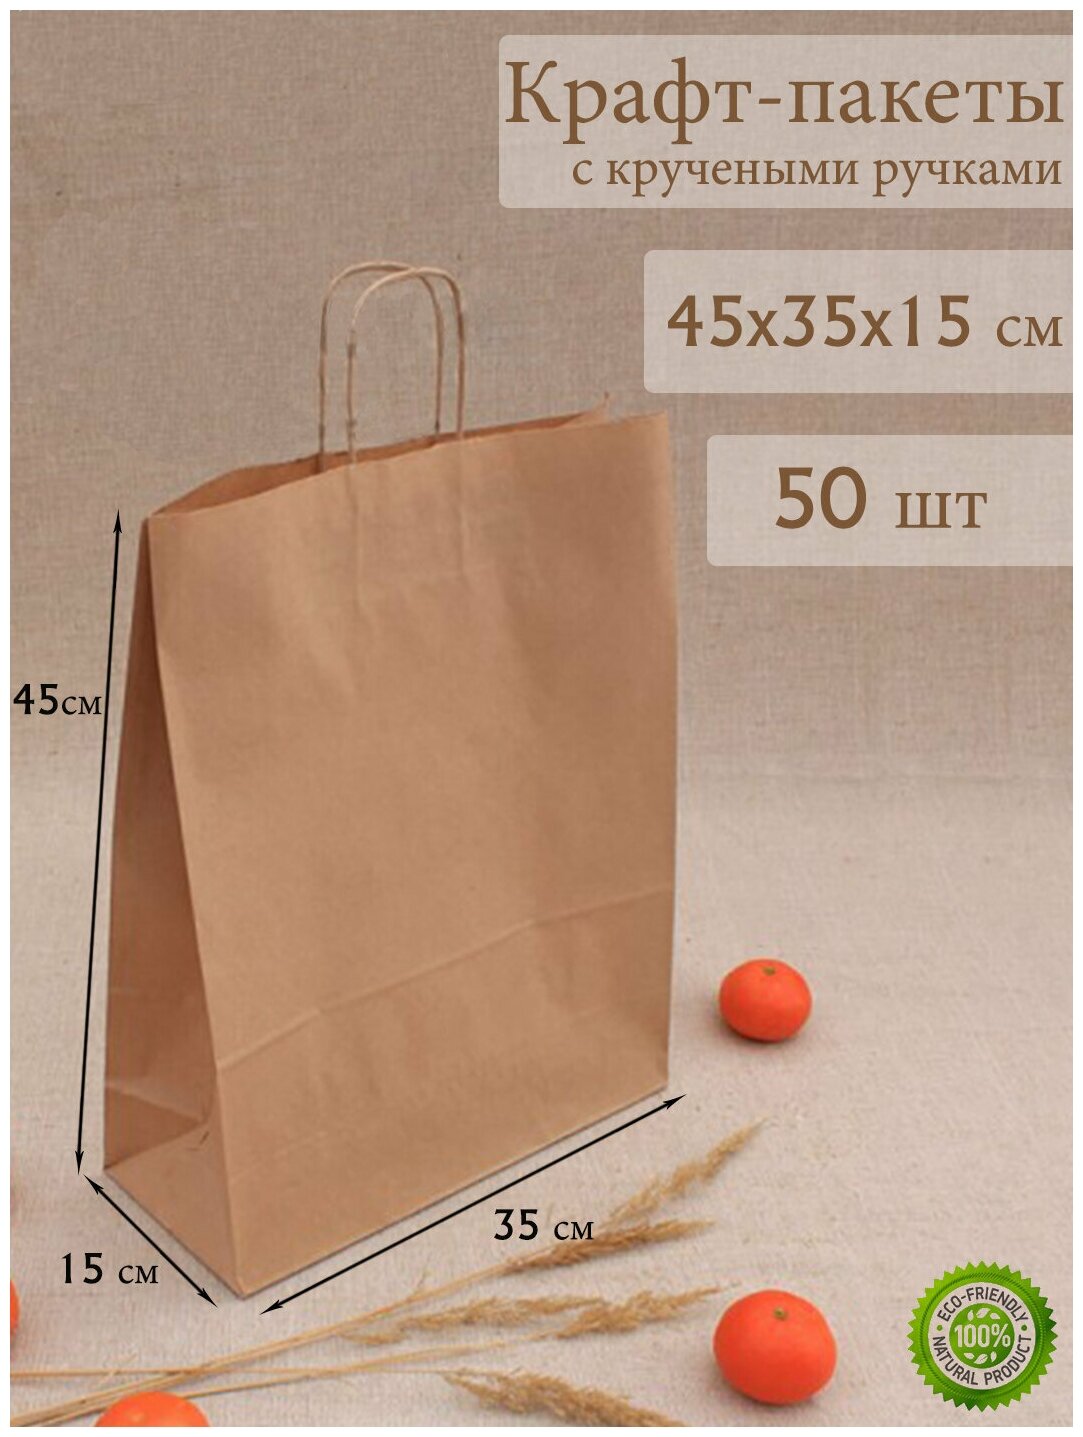 Крафт пакет бумажный с ручками 45*35*15 см, 50 штук, крафтовые пакеты упаковочные, подарочные, пищевые